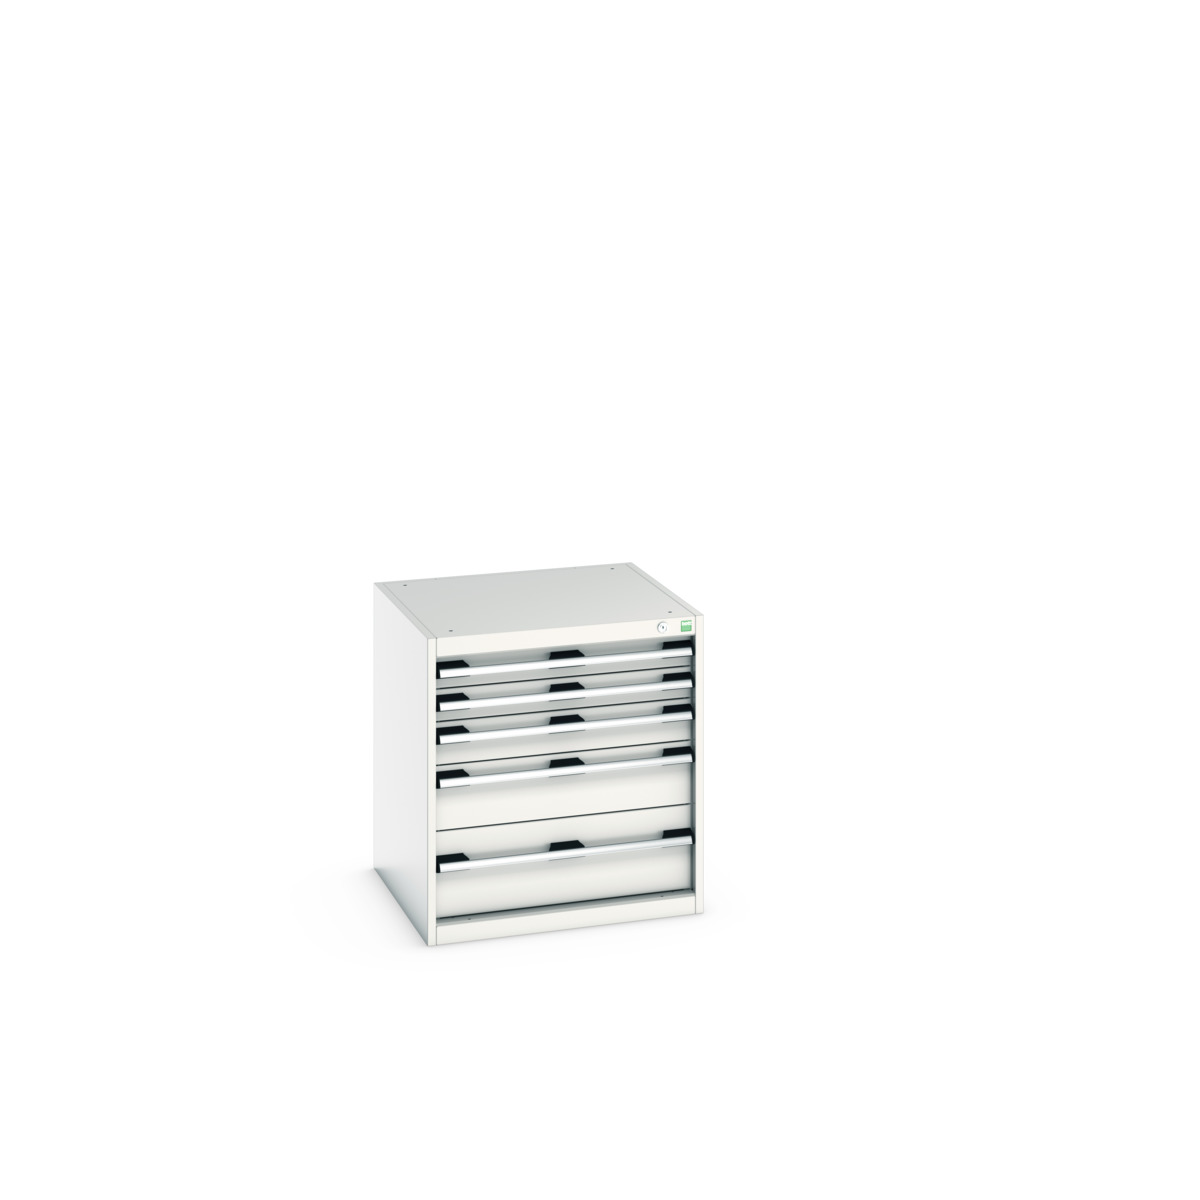 40019027.16V - cubio drawer cabinet